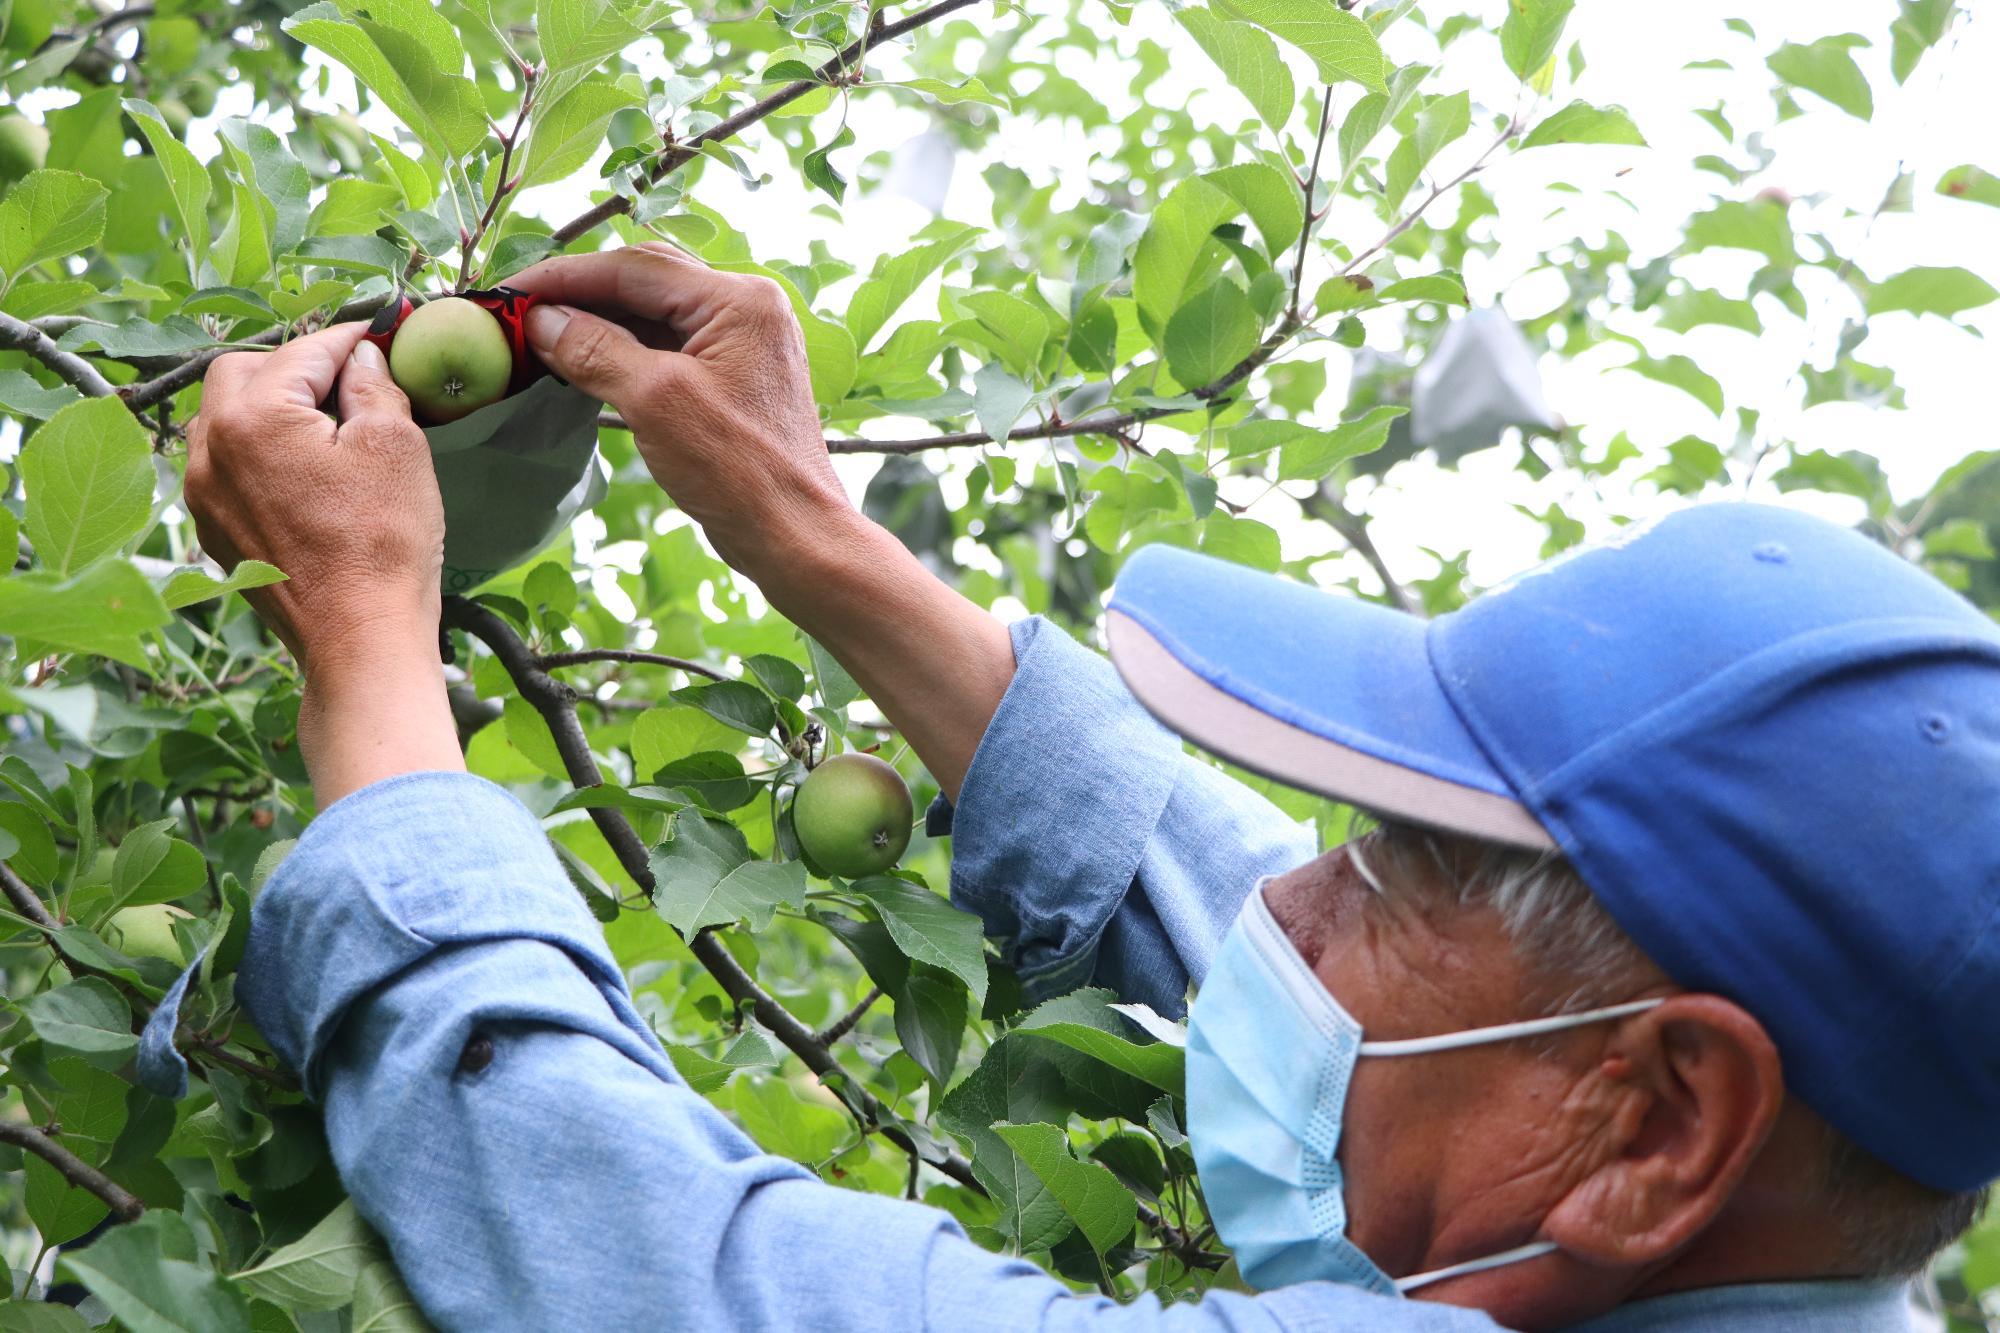 原観光りんご園職員の道下さんが小さな青いりんごの実に袋を掛けている写真